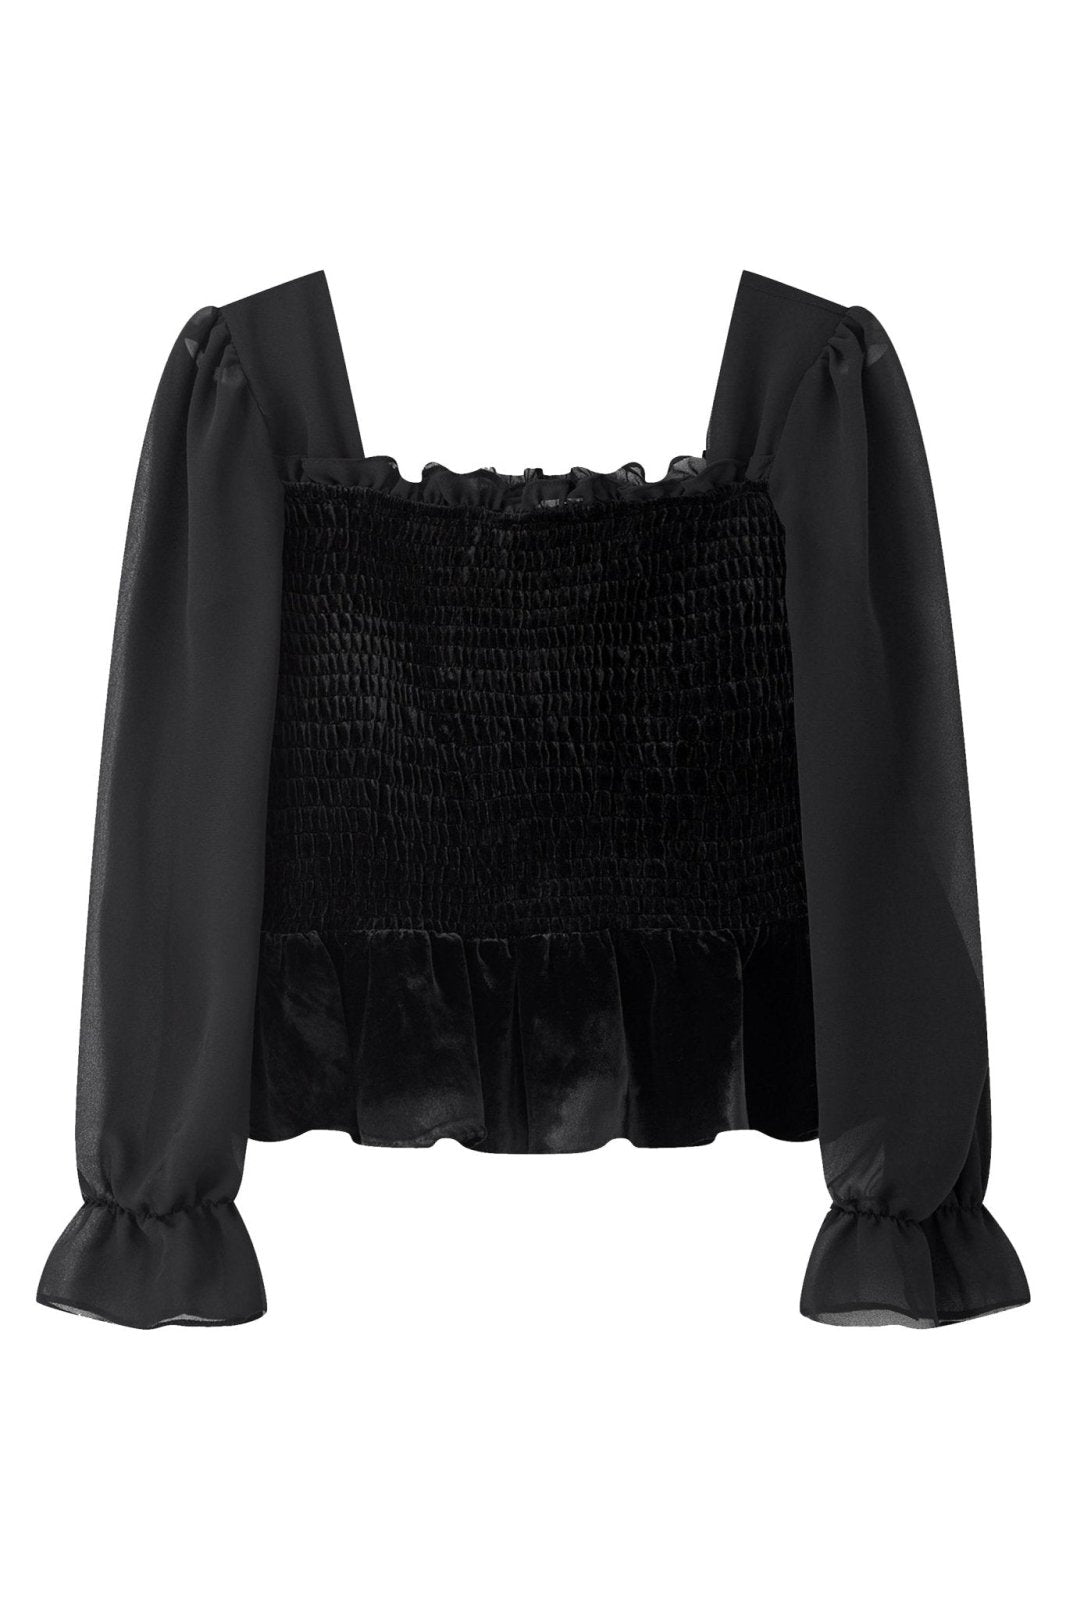 Velvet Shirred Blouse BLACK (DD) 絲絨氣質皺褶上衣 - DAG-DD8899-21BlackS - S - - D'ZAGE Designs